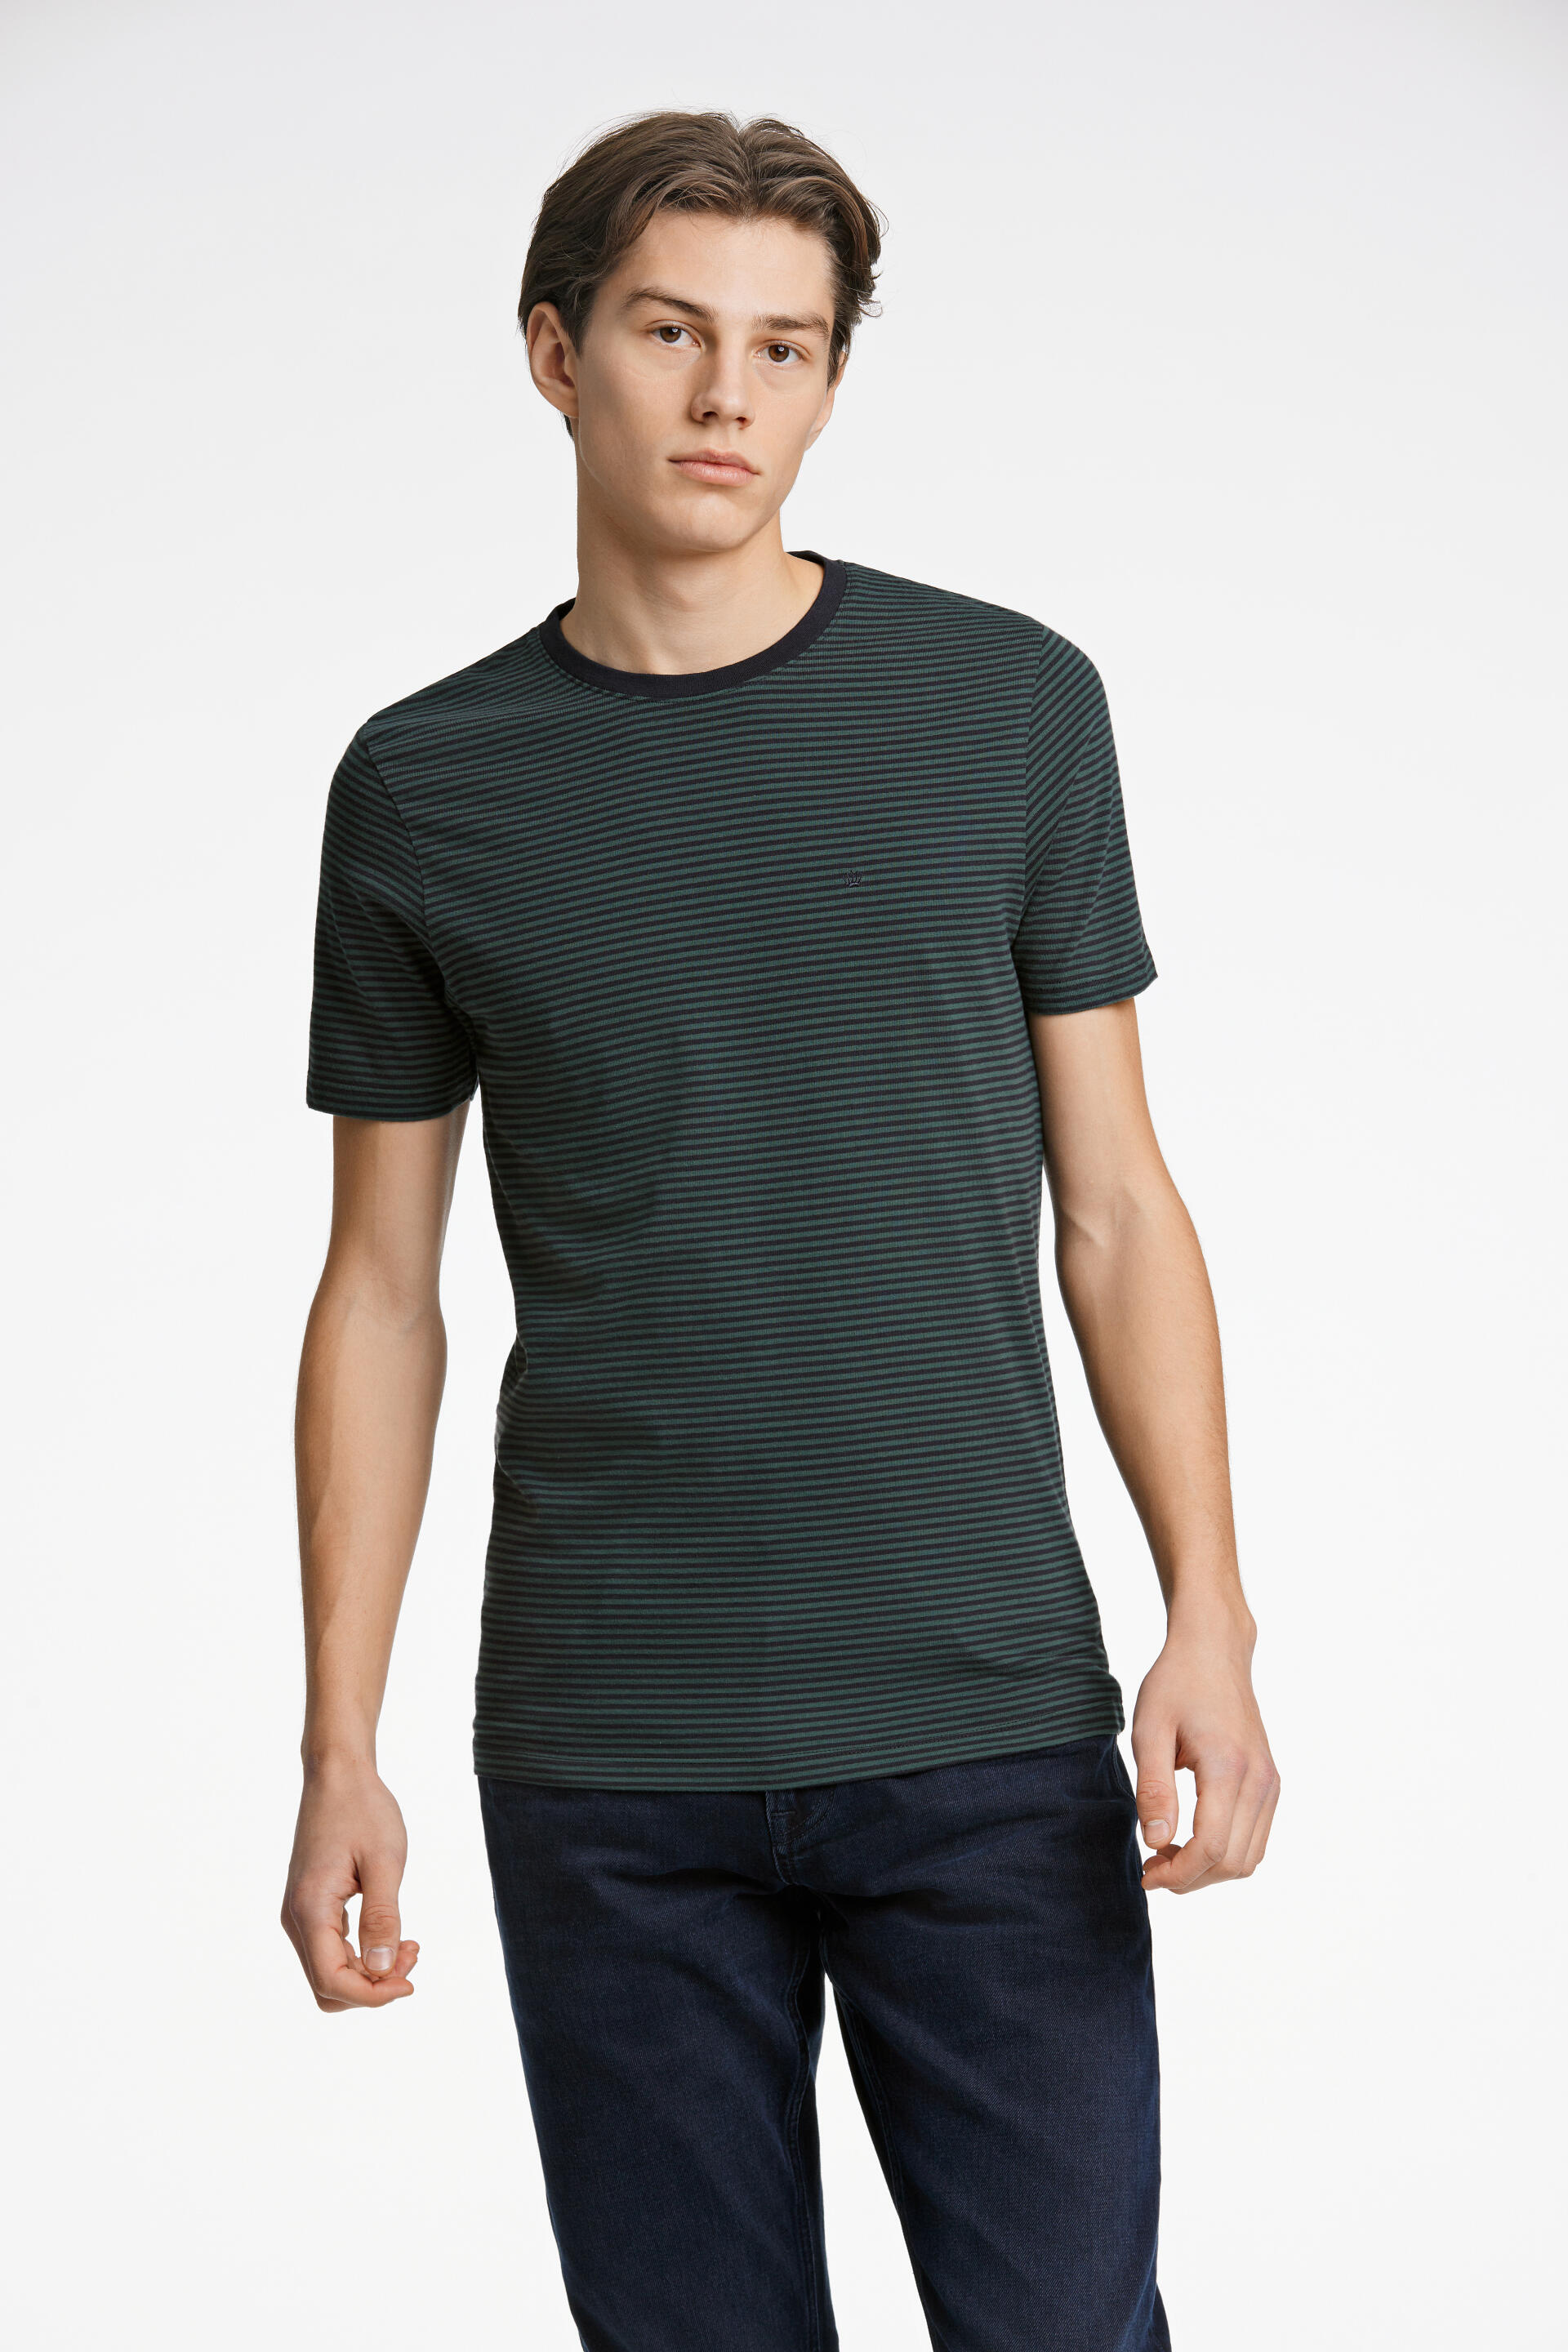 Junk de Luxe  T-shirt Grön 60-452035